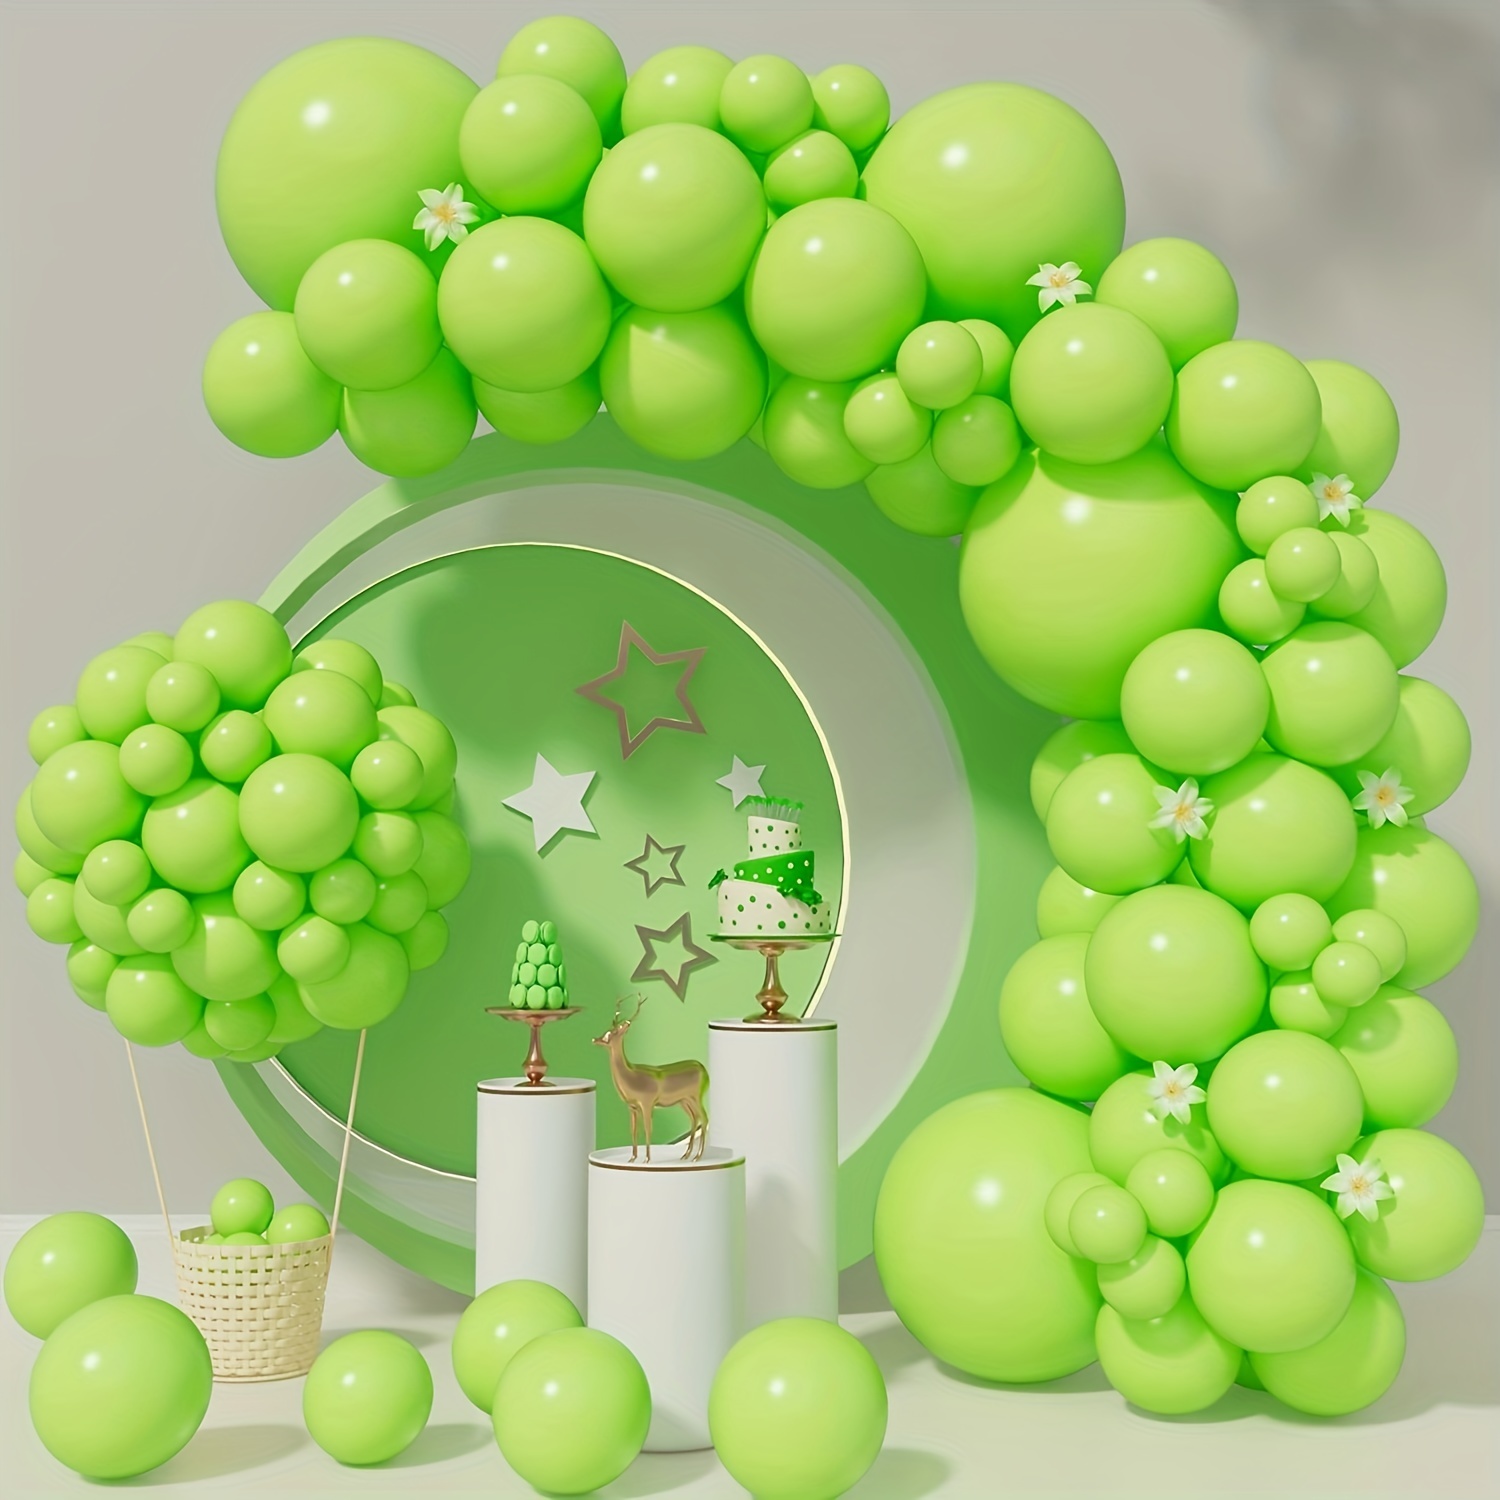 50 globos verdes de 12 pulgadas, globos verde claro y globos verde oscuro  para decoración de árbol, cumpleaños, boda, fiesta, primavera